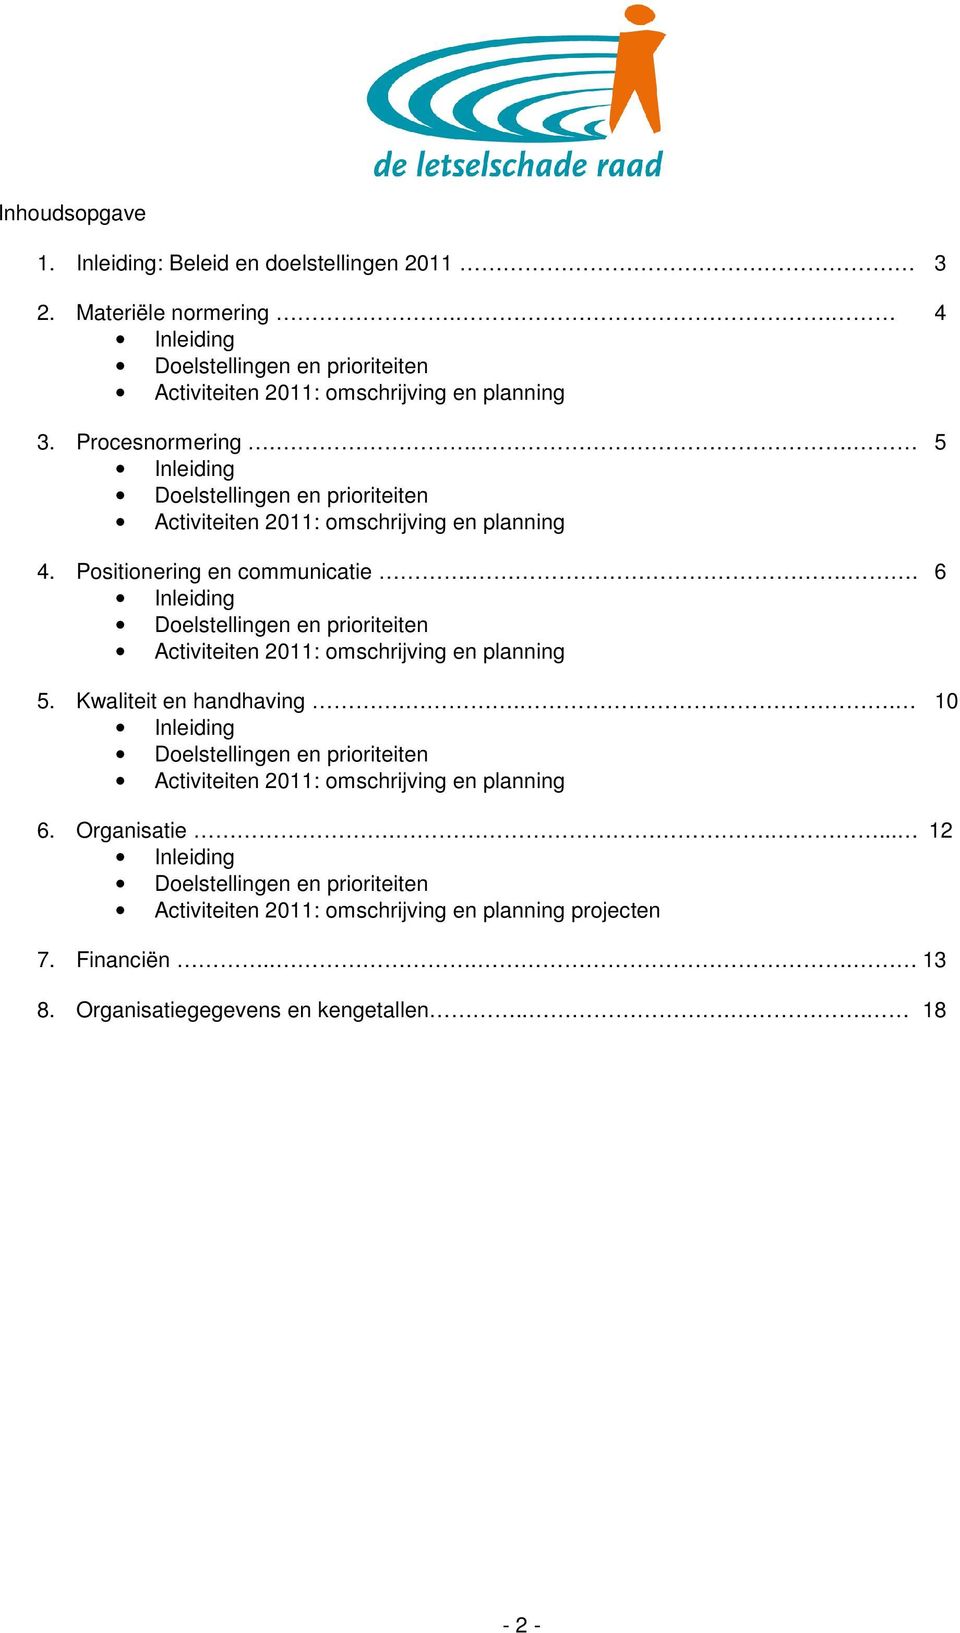 .. 6 Inleiding Doelstellingen en prioriteiten Activiteiten 2011: omschrijving en planning 5. Kwaliteit en handhaving.